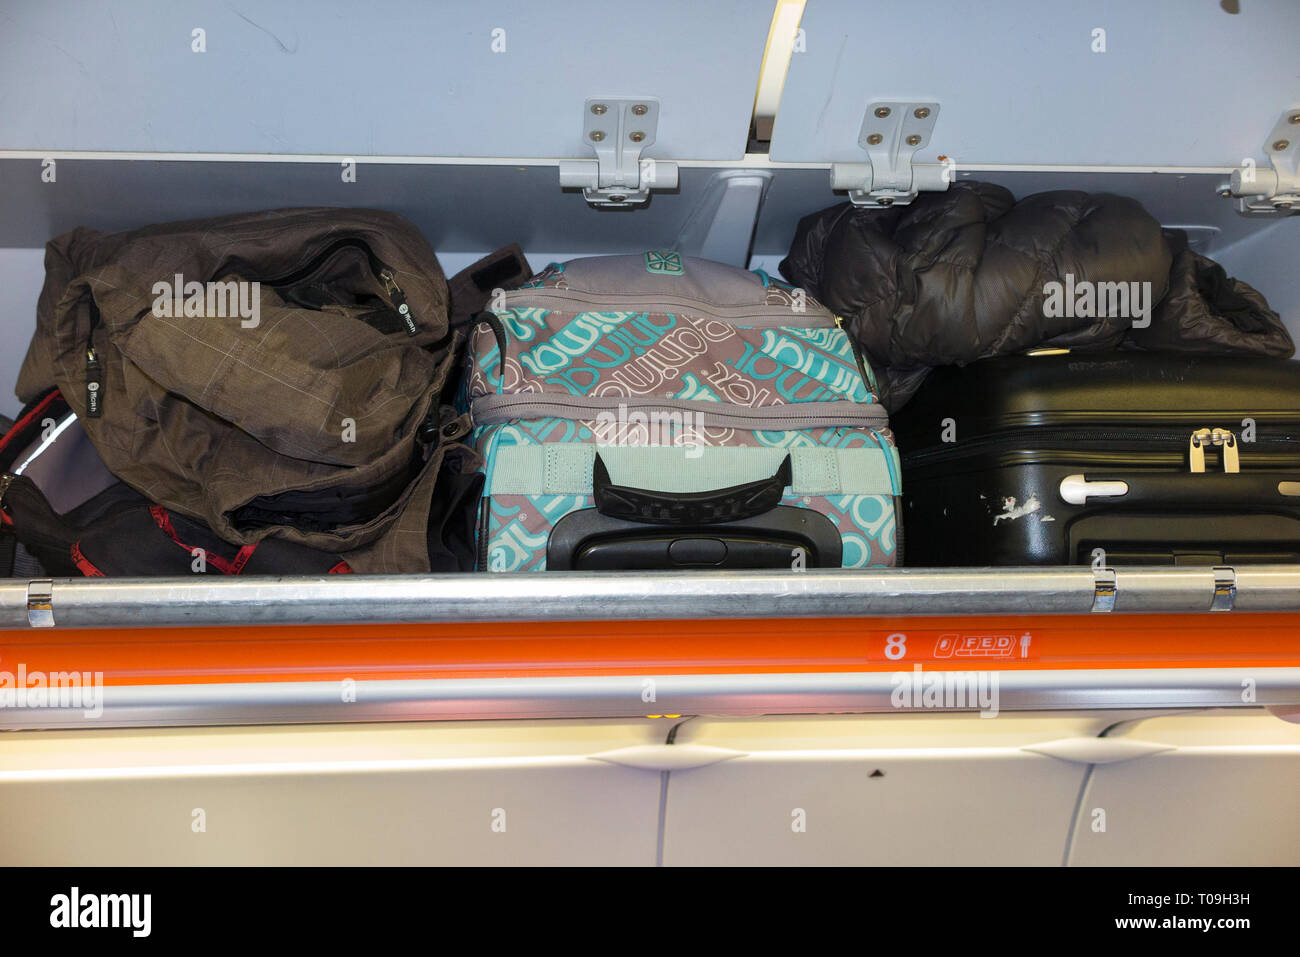 Armario de pasajeros superiores / taquillas / compartimento / compartimentos para guardar bolsas de pasajeros equipaje de cabina en un avión Easyjet Airbus A320 o A319. Foto de stock